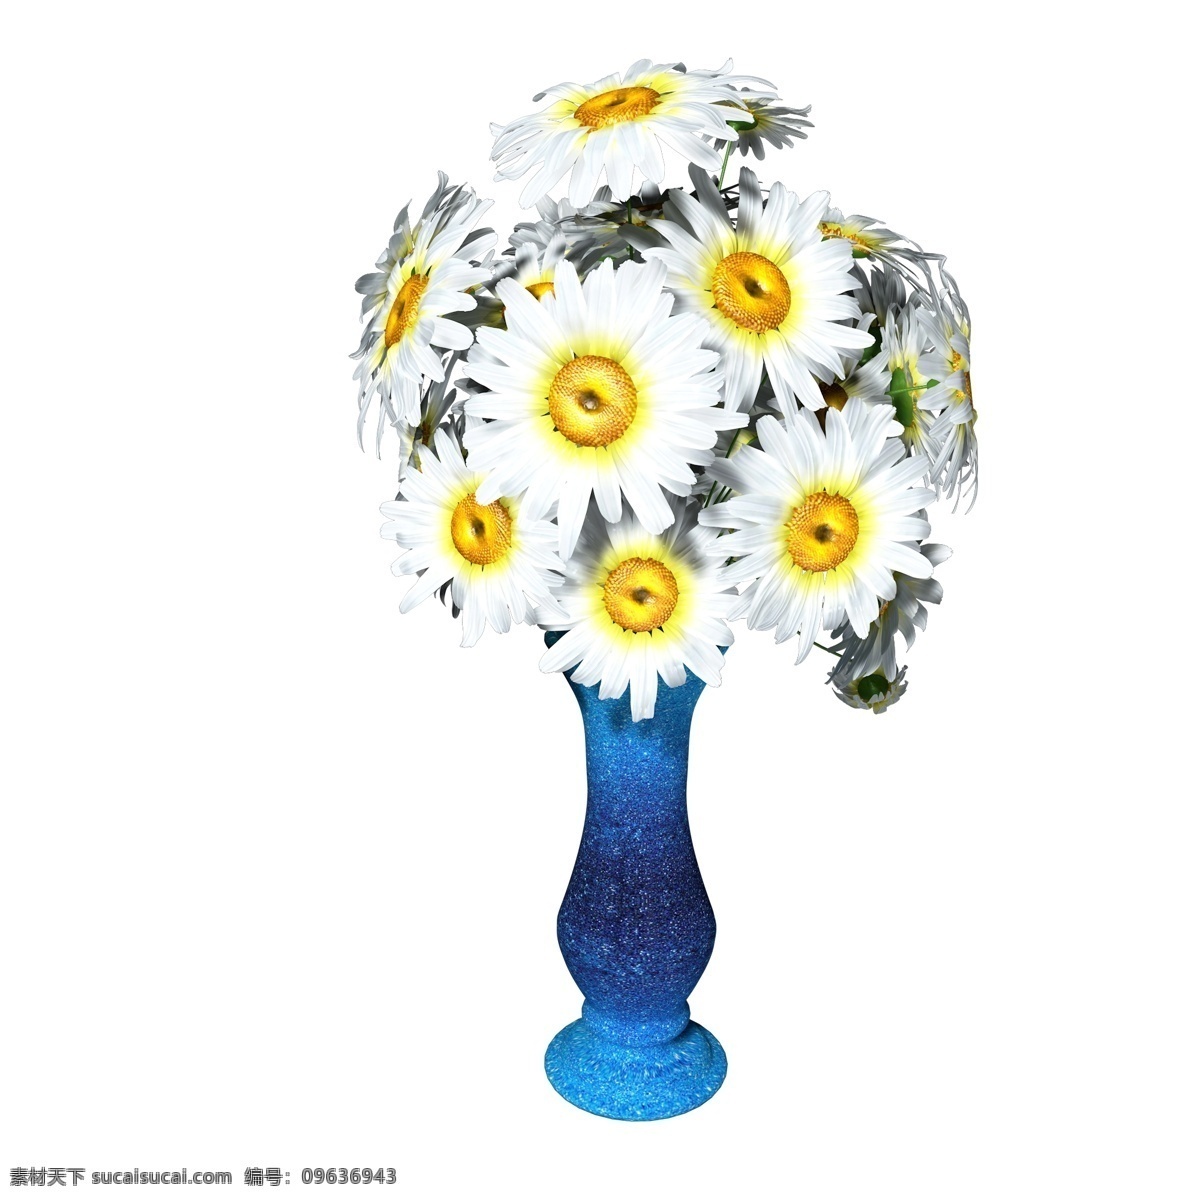 植物类 通用 元素 花瓶 插花 雏 菊 植物 雏菊 白色 黄色 蓝色 渐变 陶瓷 写实 立体 装饰